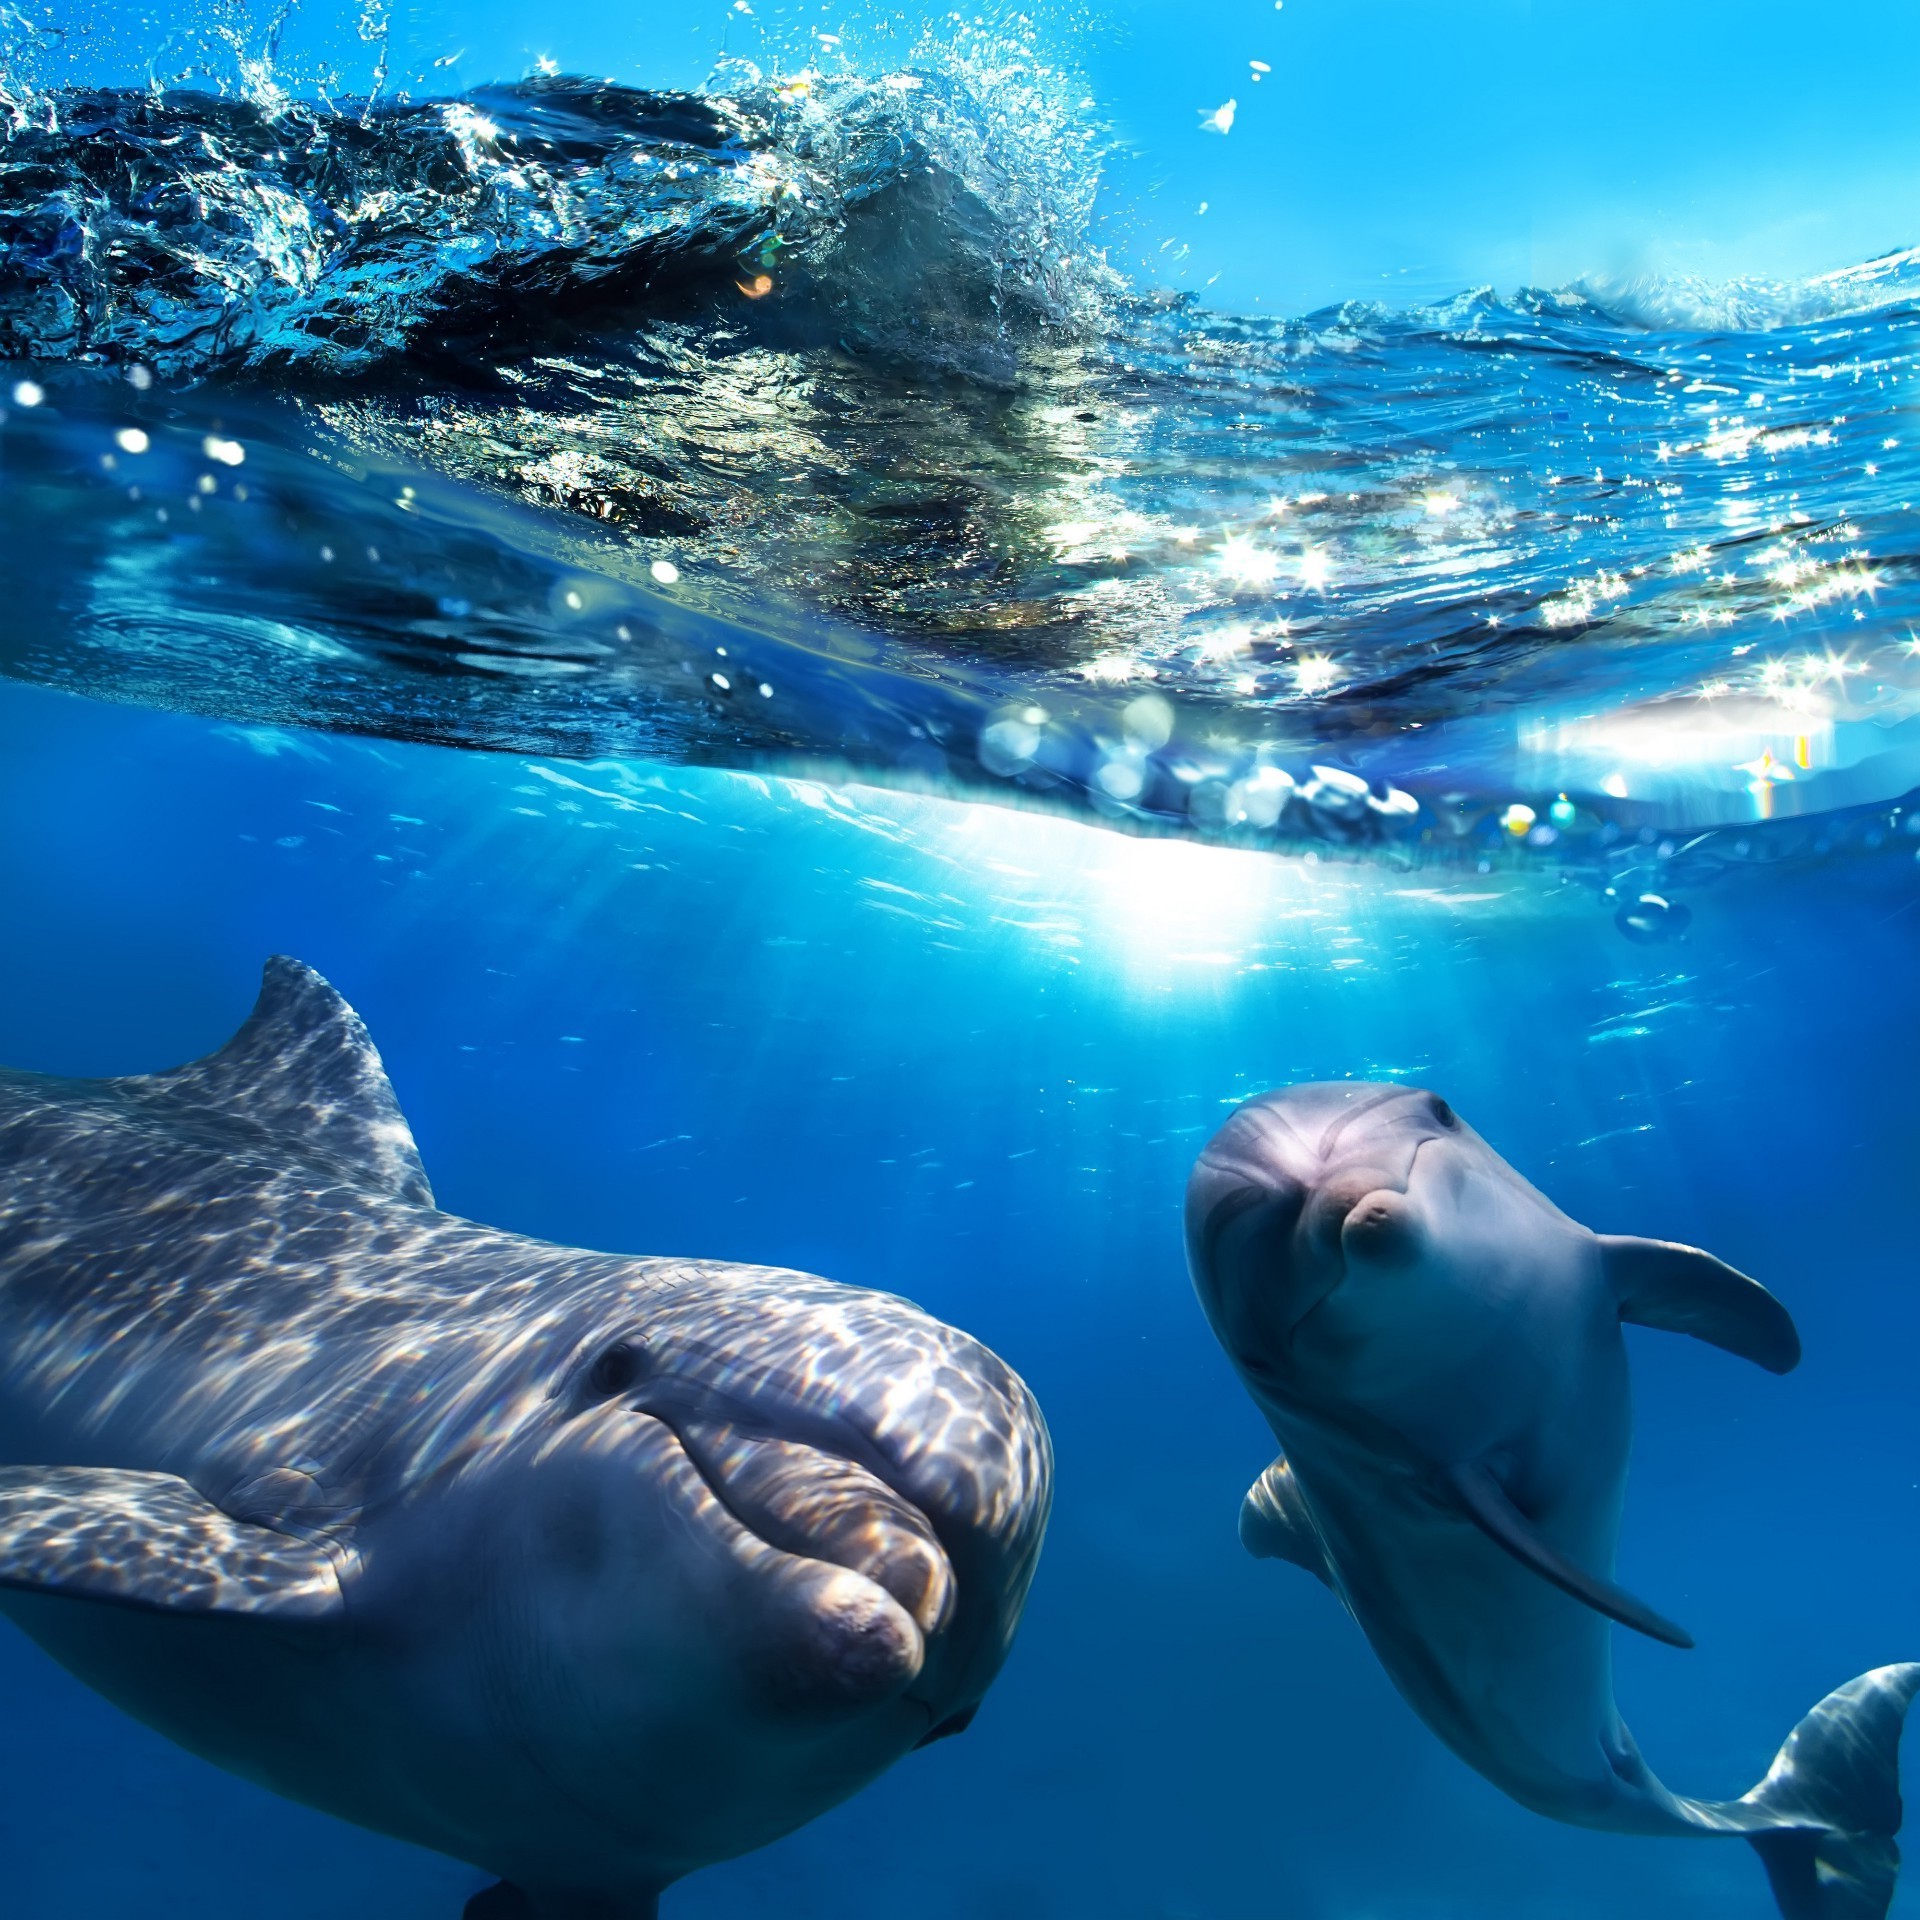 животные подводный воздуходувки плавание дельфин кит воды рыбы океан дайвинг море шарк аквариум морской фин дикой природы водный